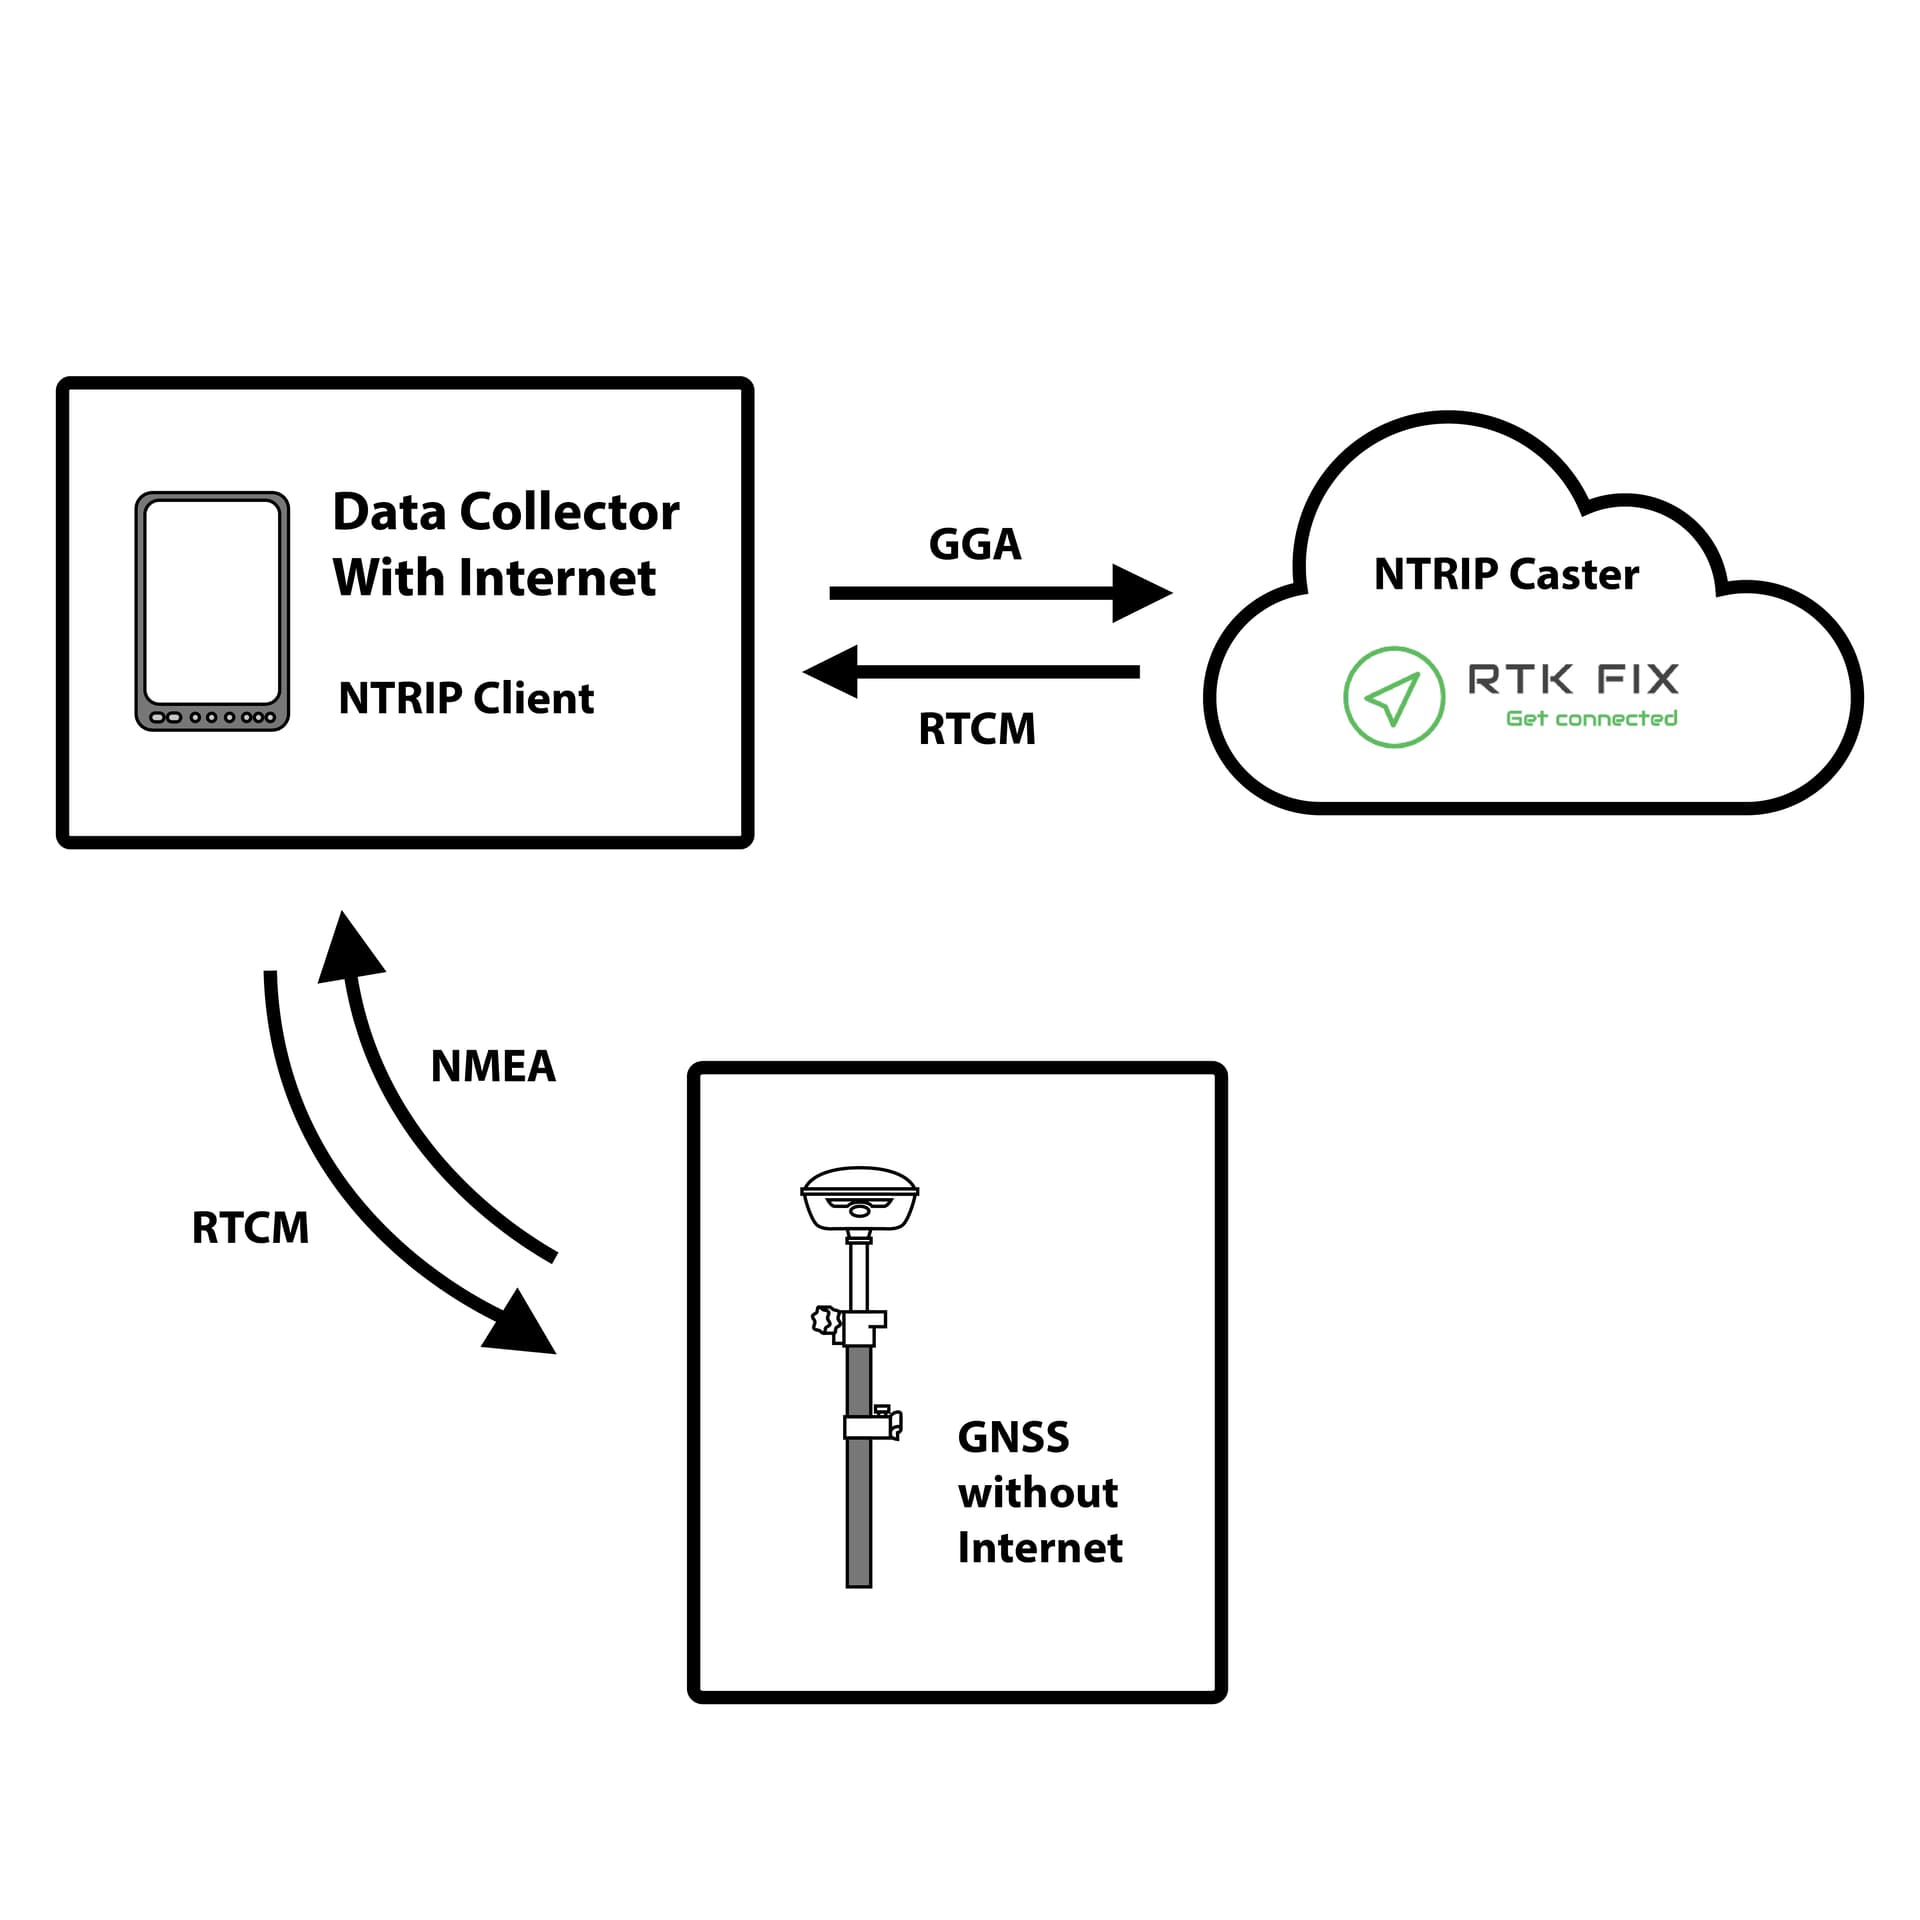 Data collector as NTRIP linkedin